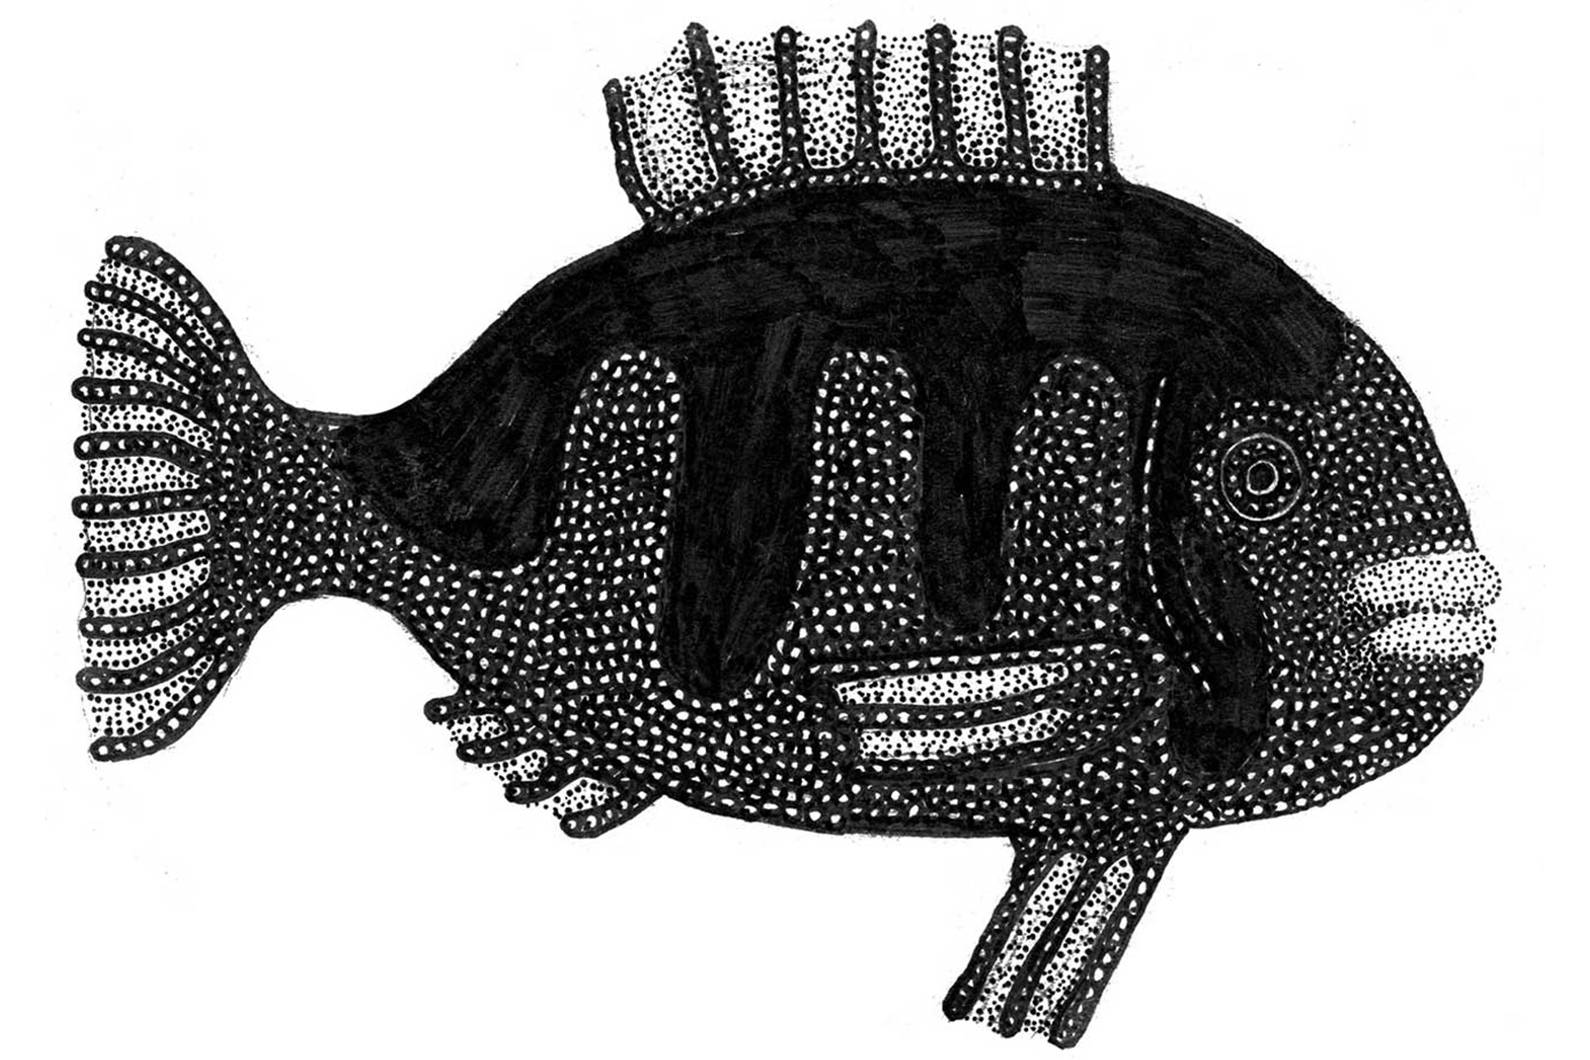 Teckning av fisk i svartvitt